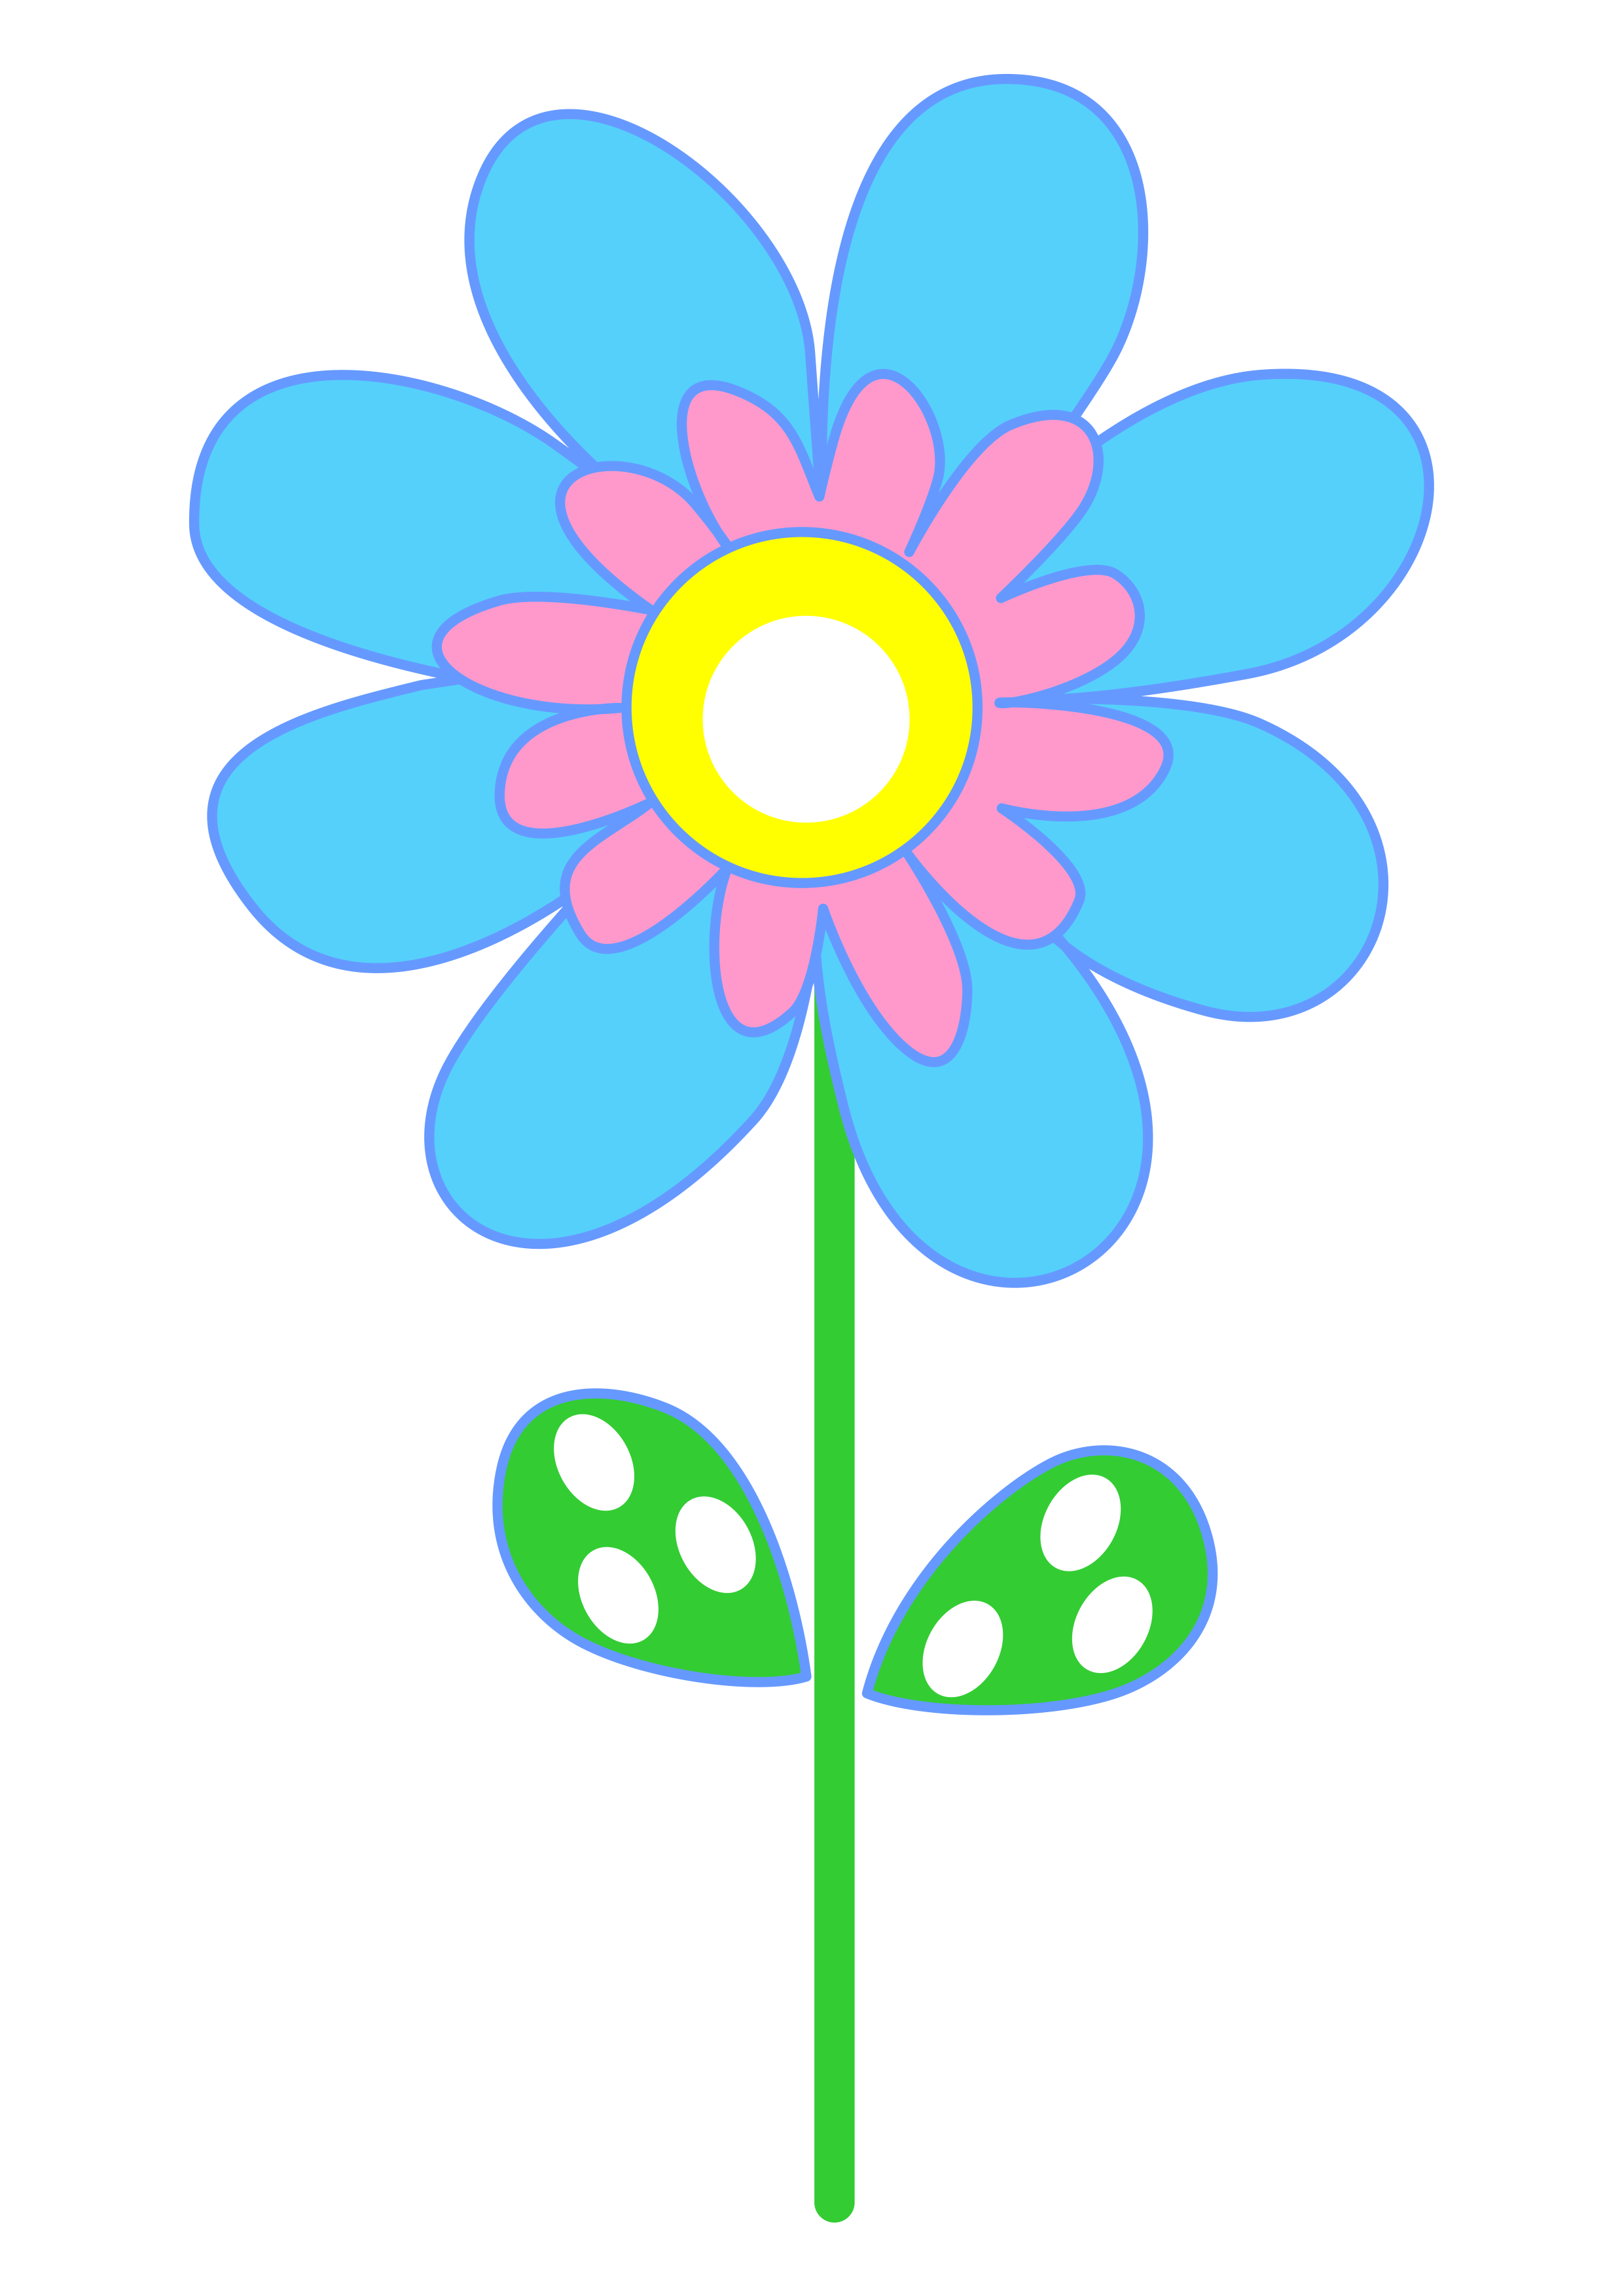 Flor azul e rosa desenho simples jardim encantado imagem sem fundo vetor arquivo de recorte folhas png